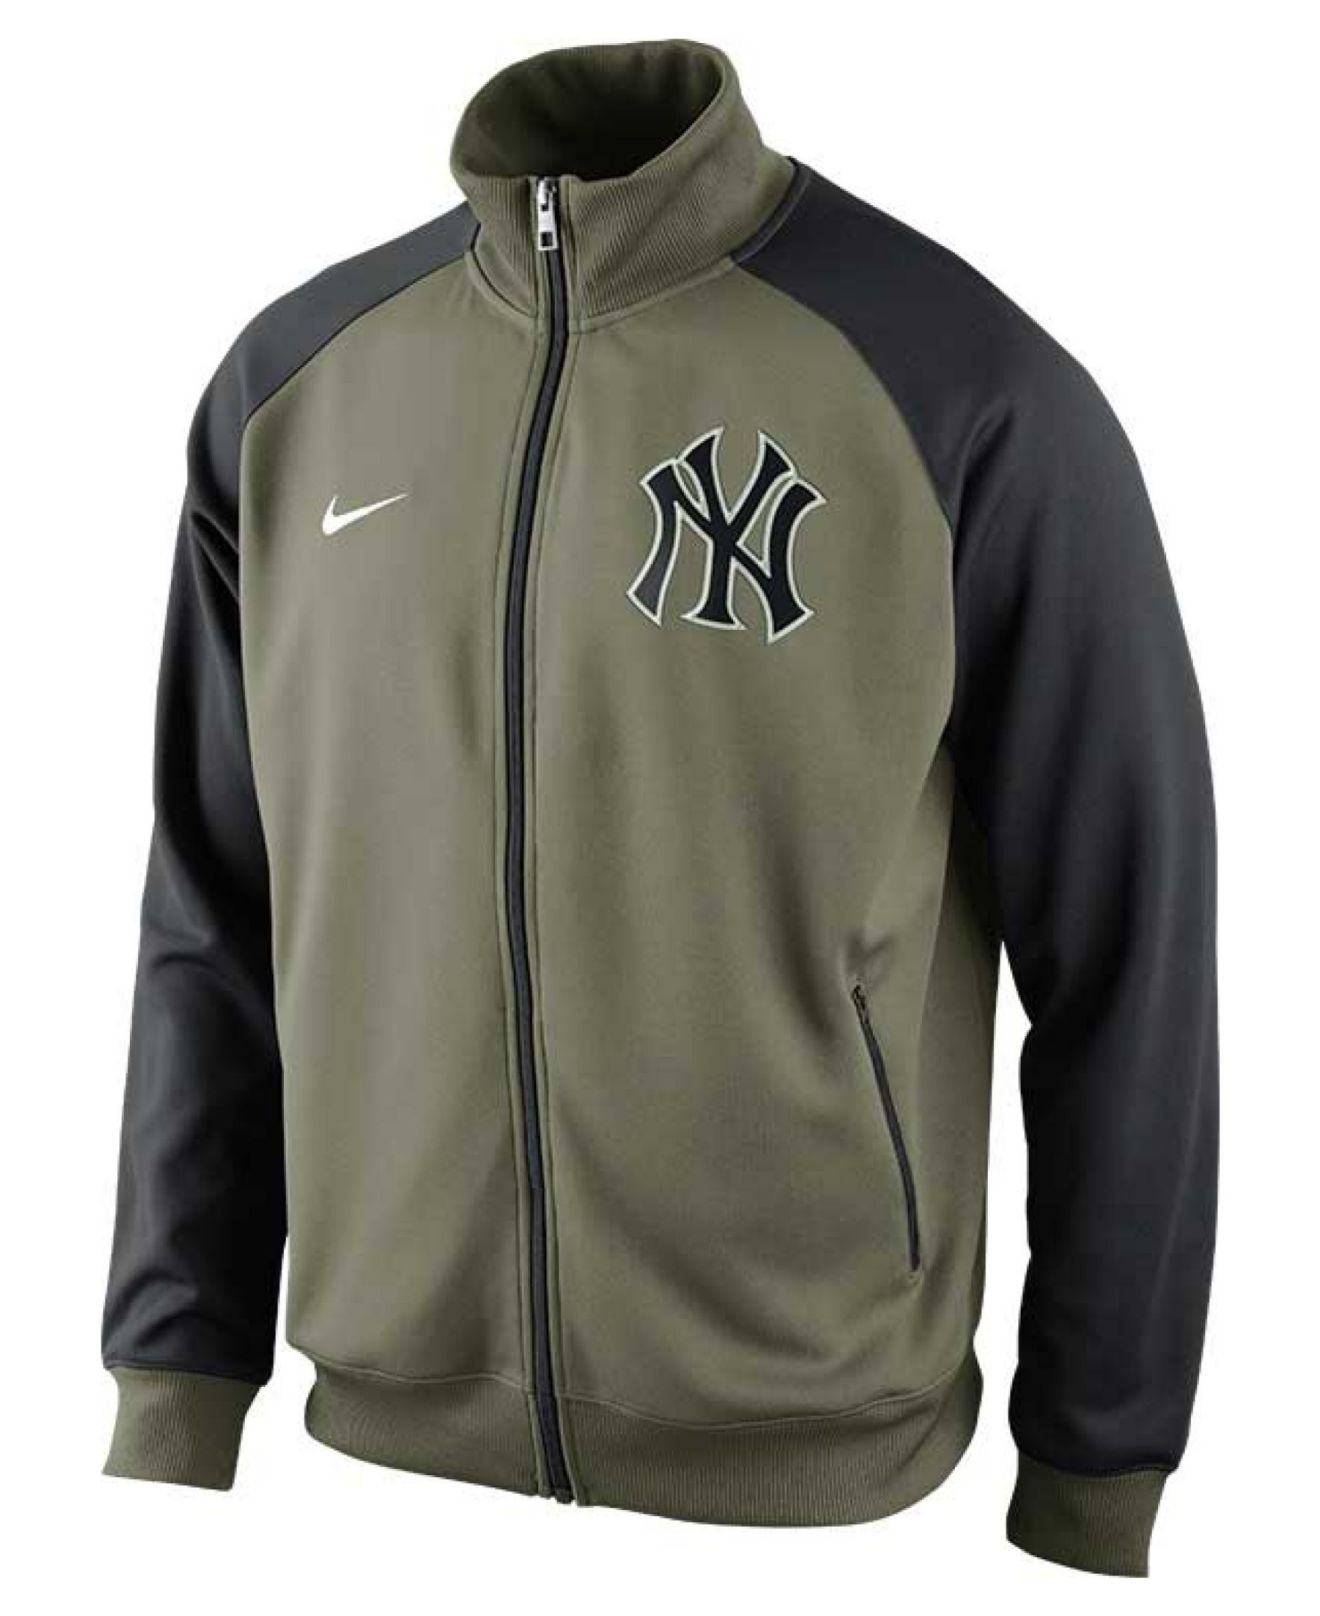 Lyst - Nike Men'S New York Yankees Full-Zip Track Jacket in Green for Men